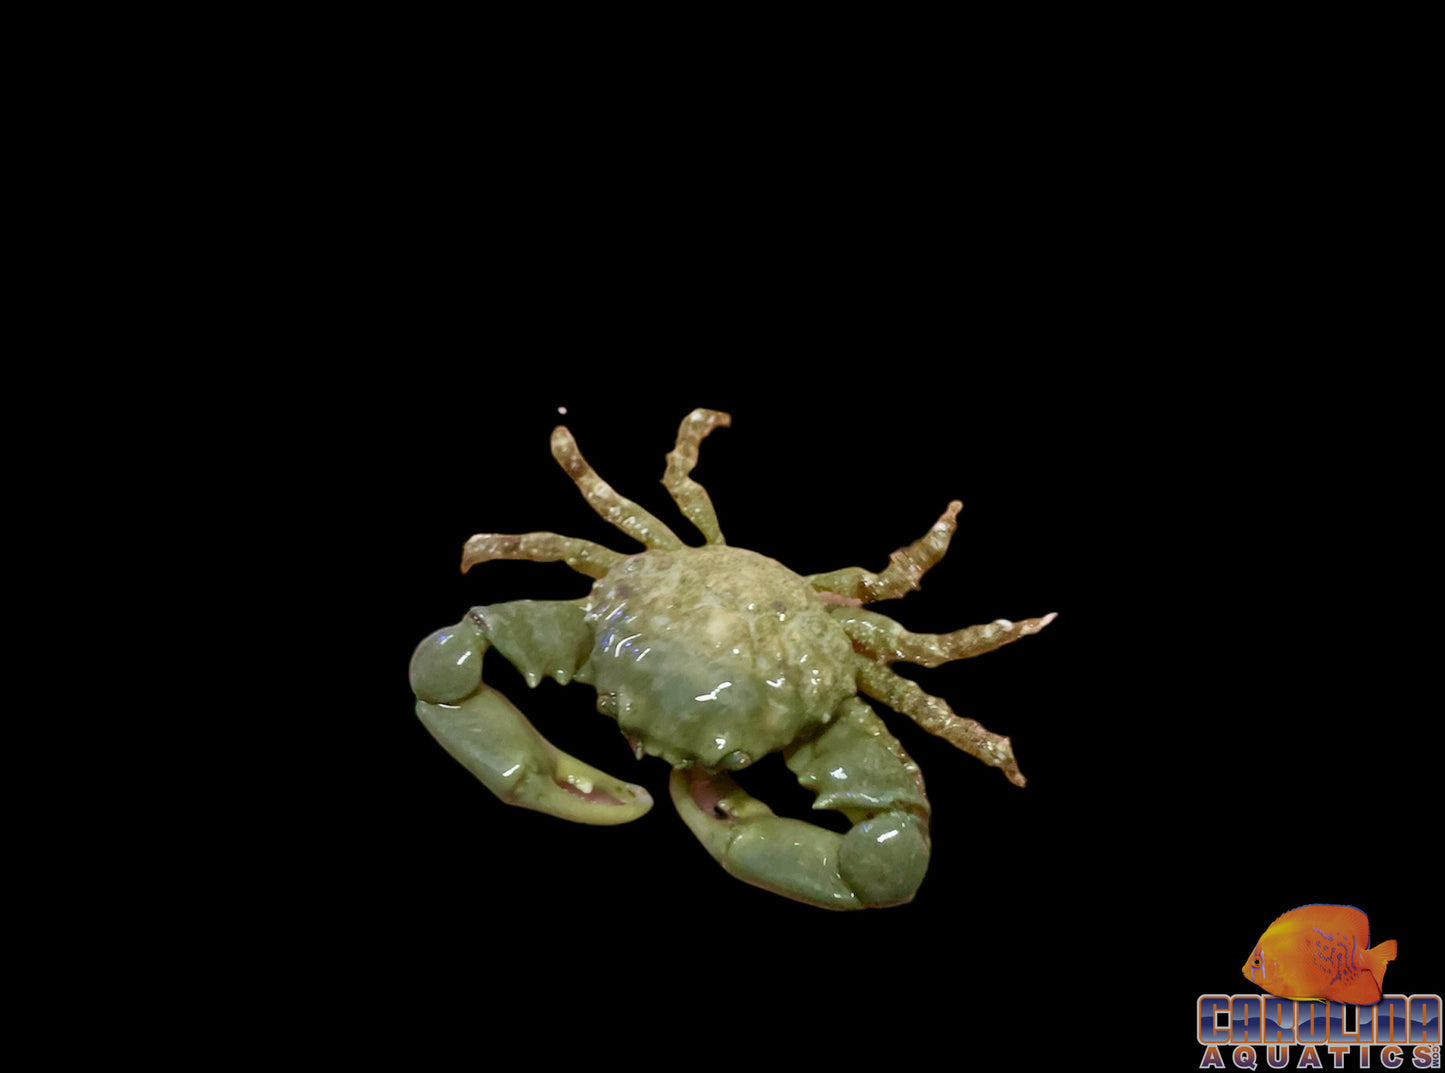 Crab - Emerald